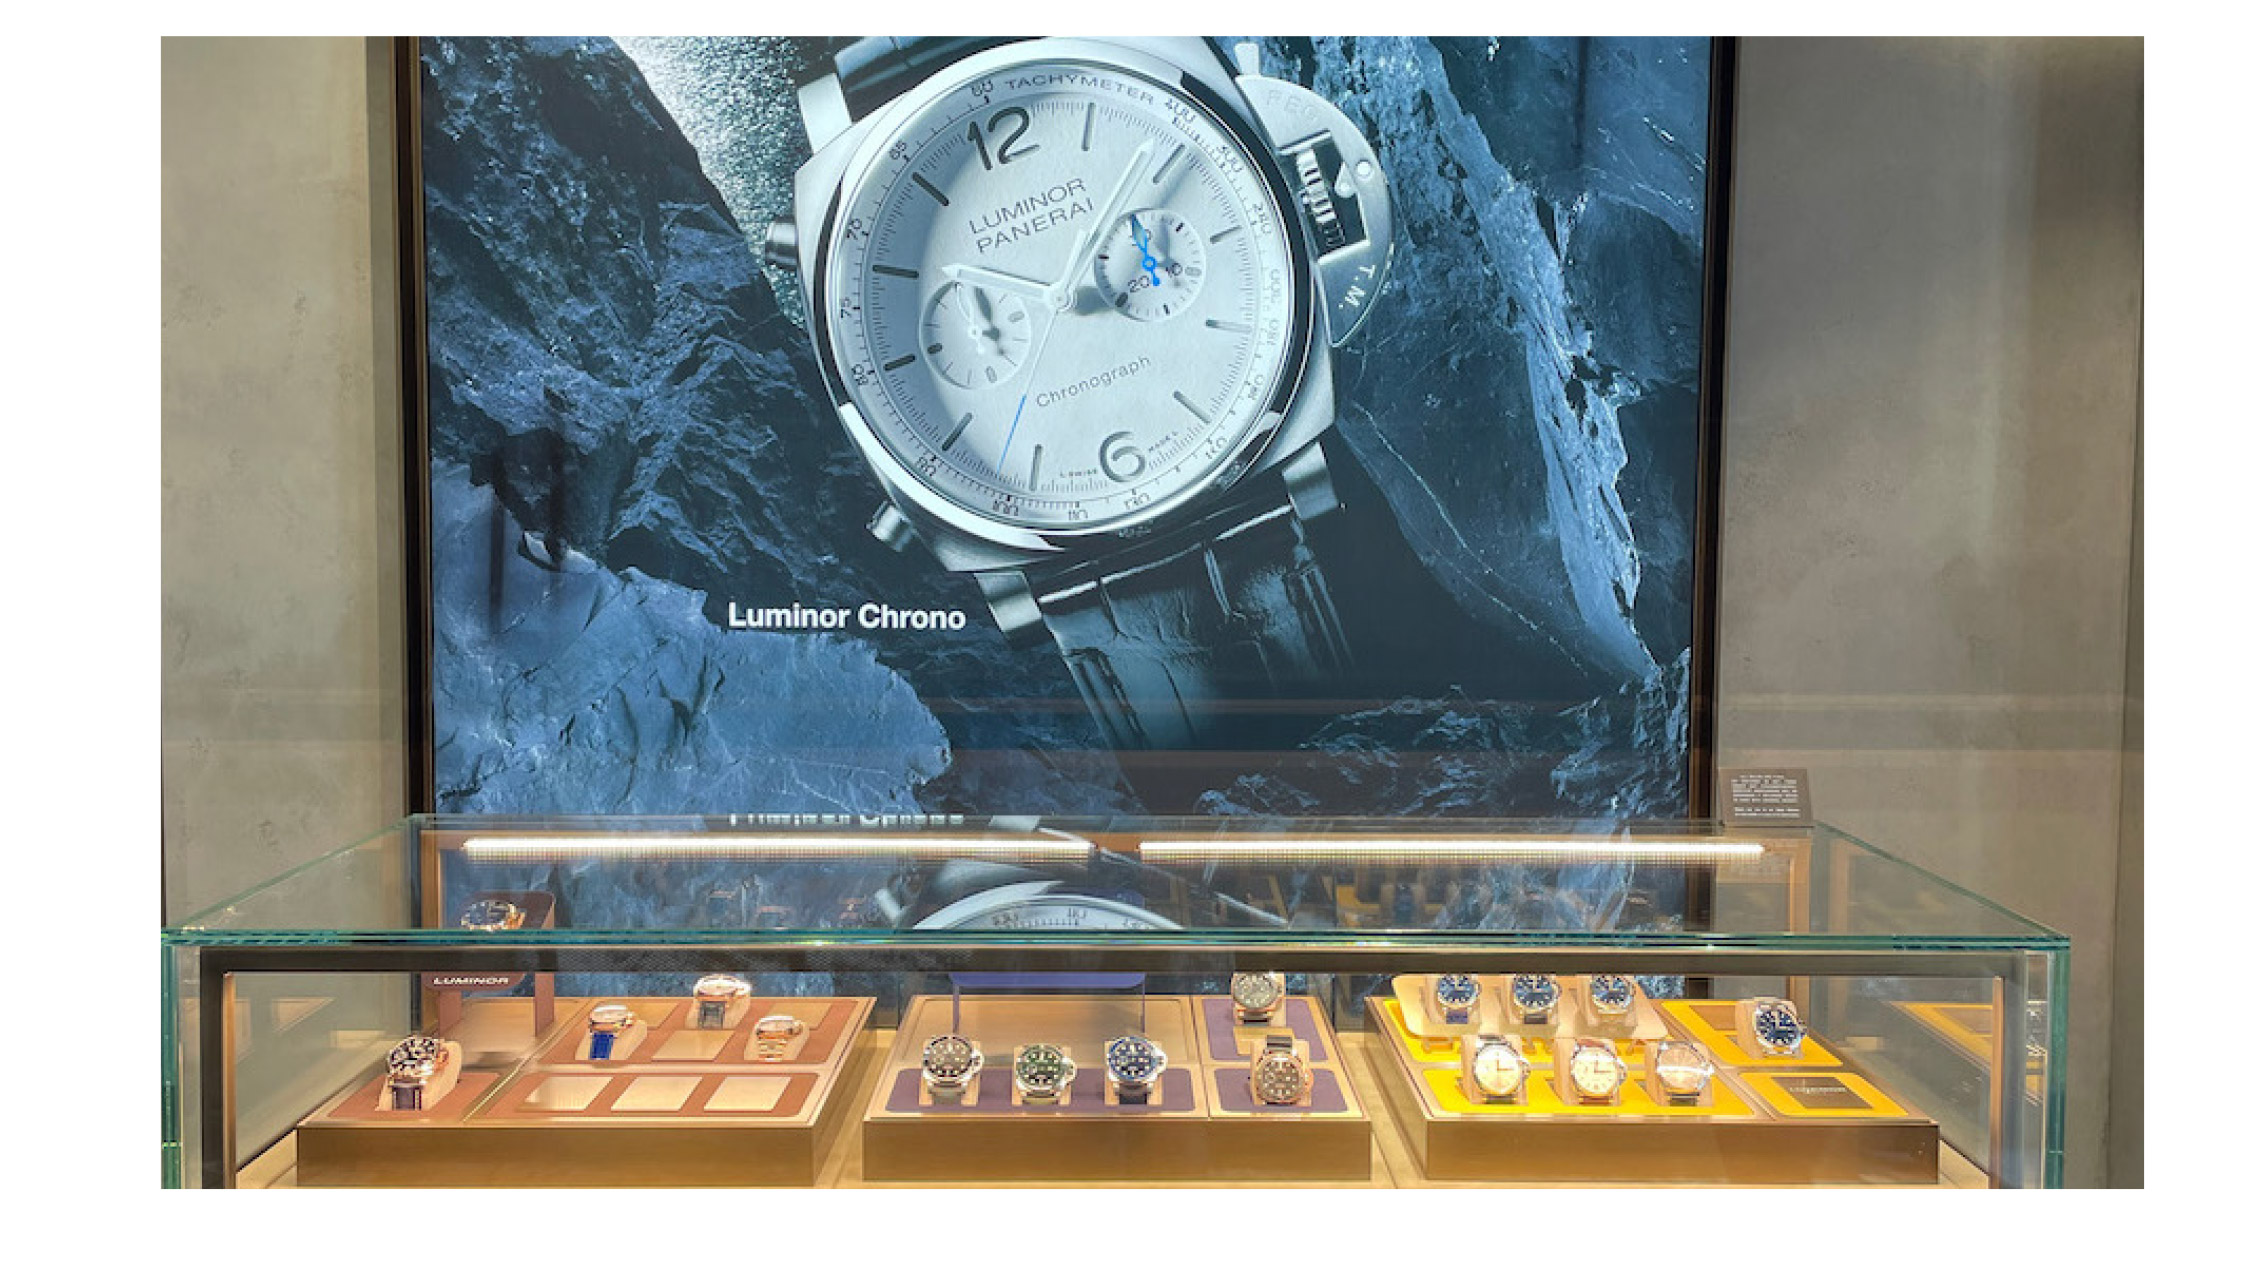 Panerai watch display case showcasing Luminor